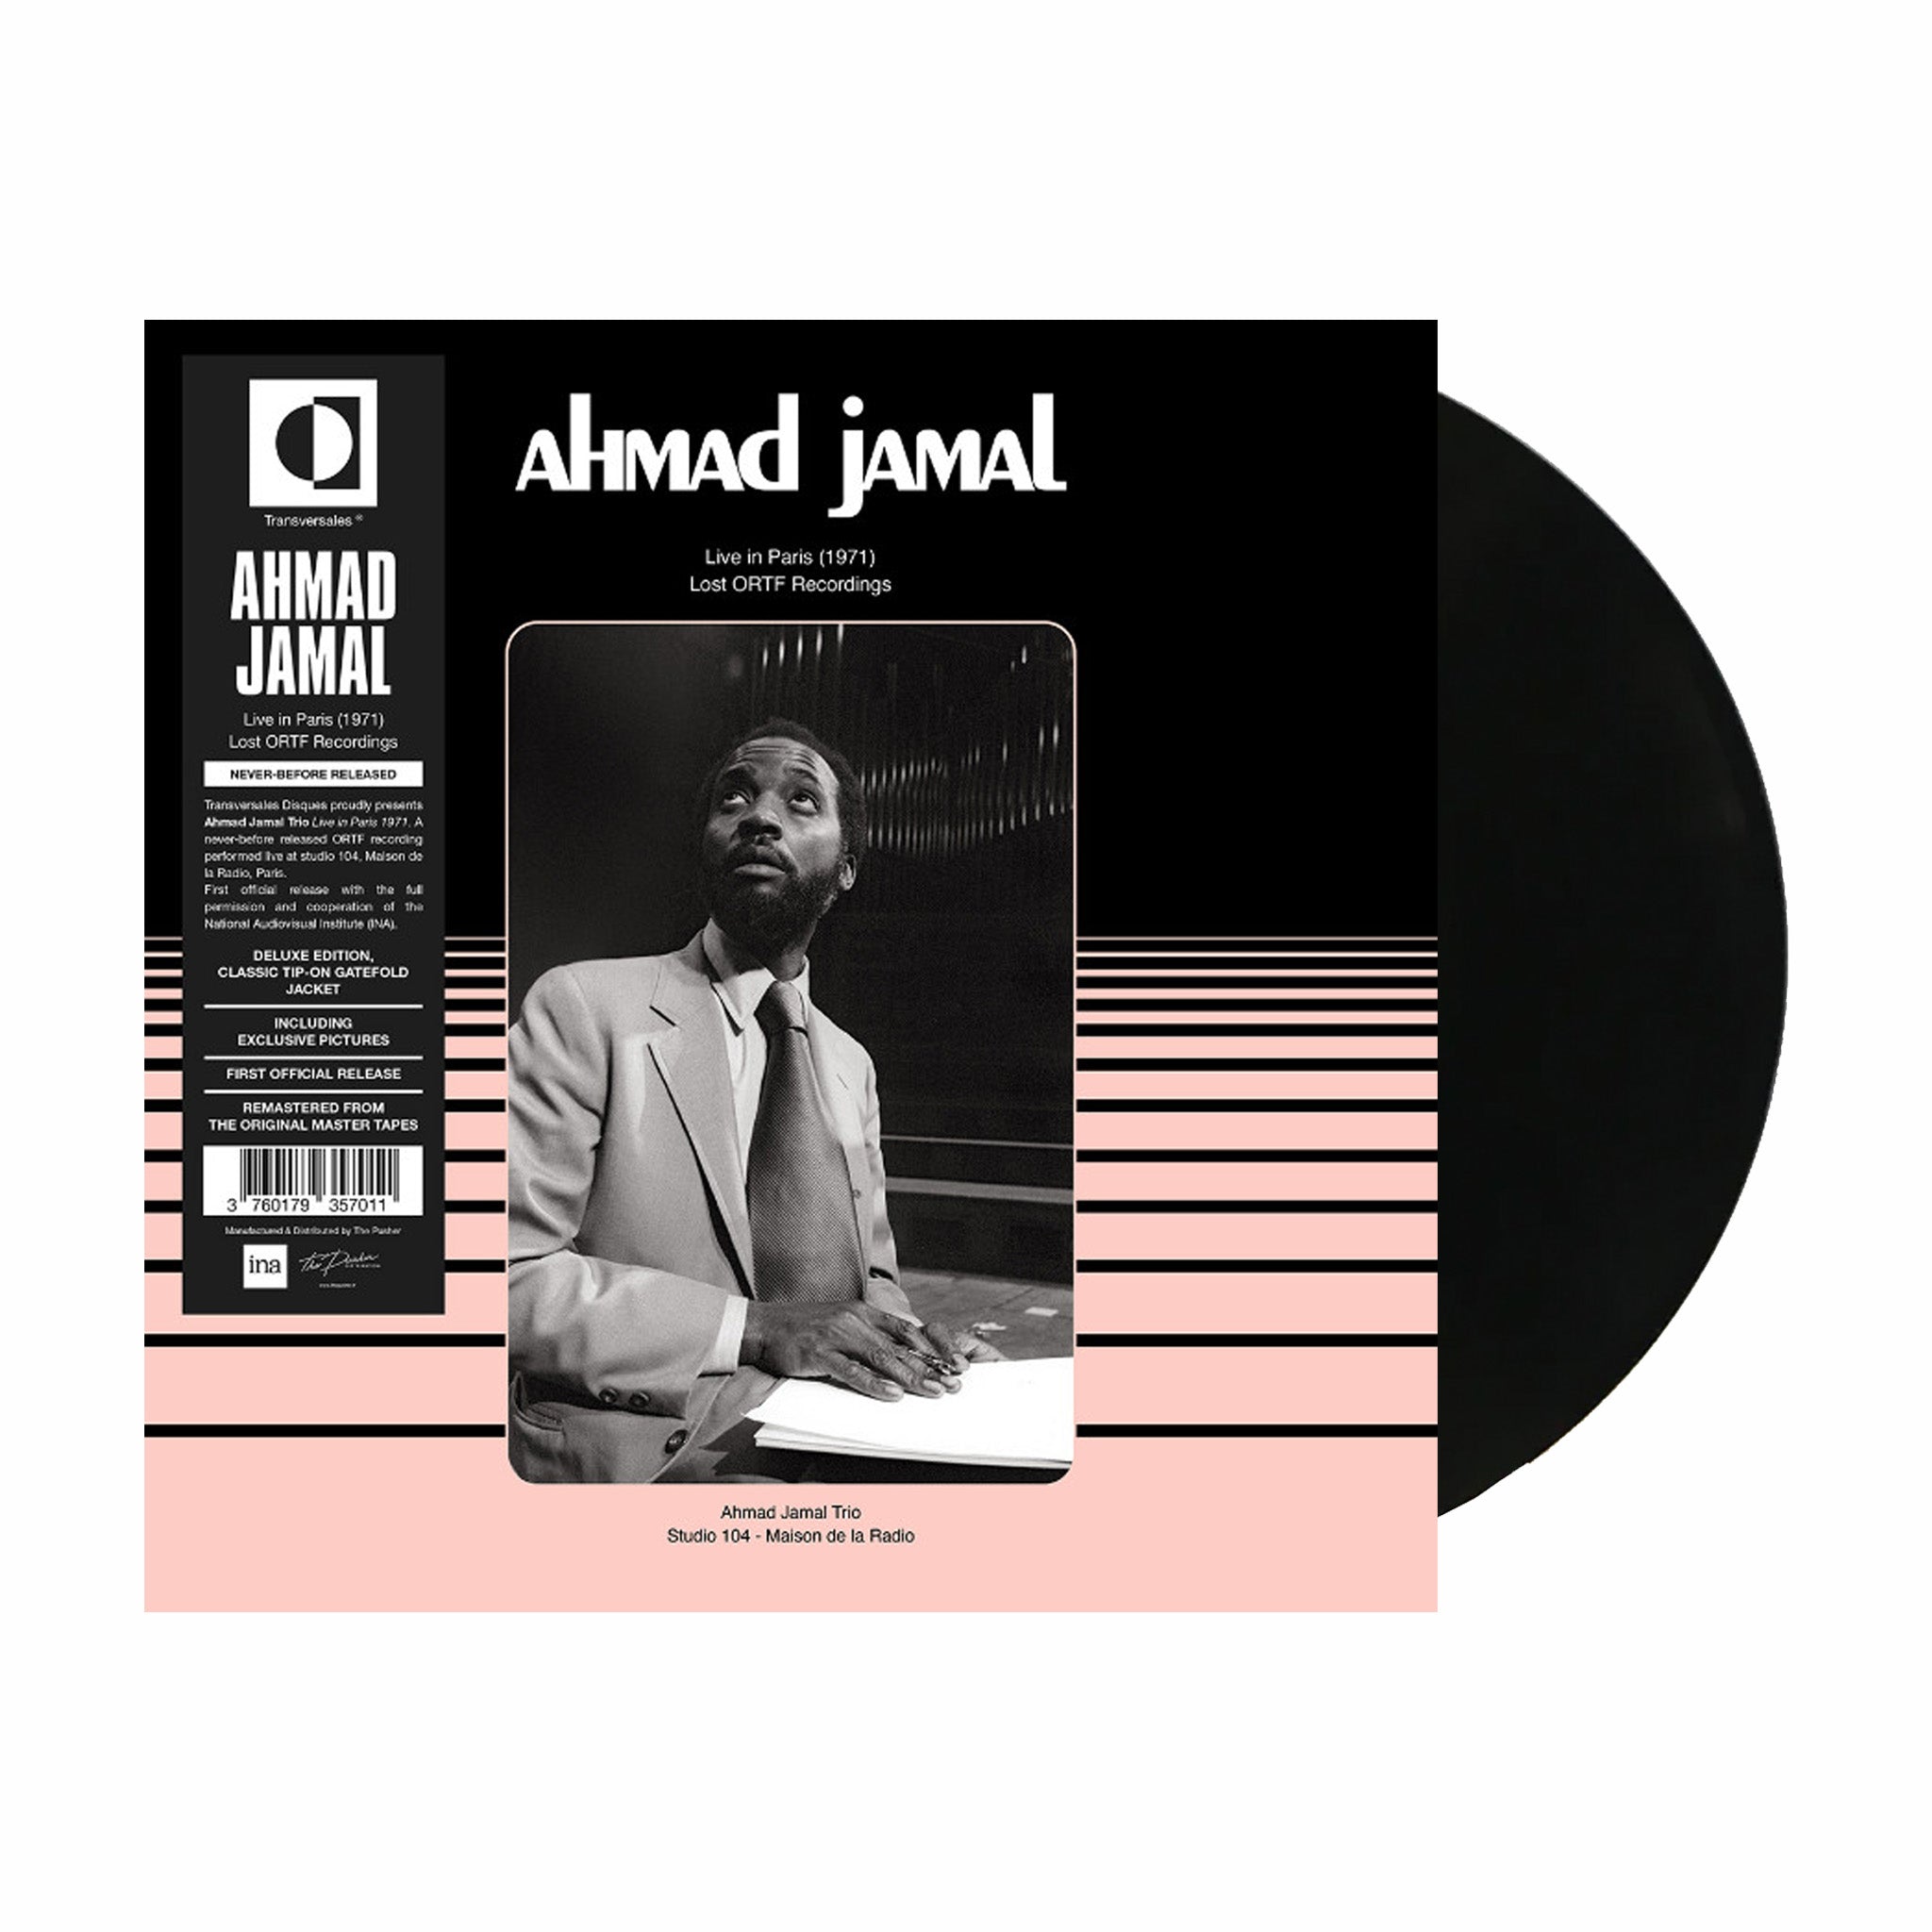 Ahmad Jamal &quot;Live in Paris 1971&quot; (Lost ORTF Recordings) LP - August Shop